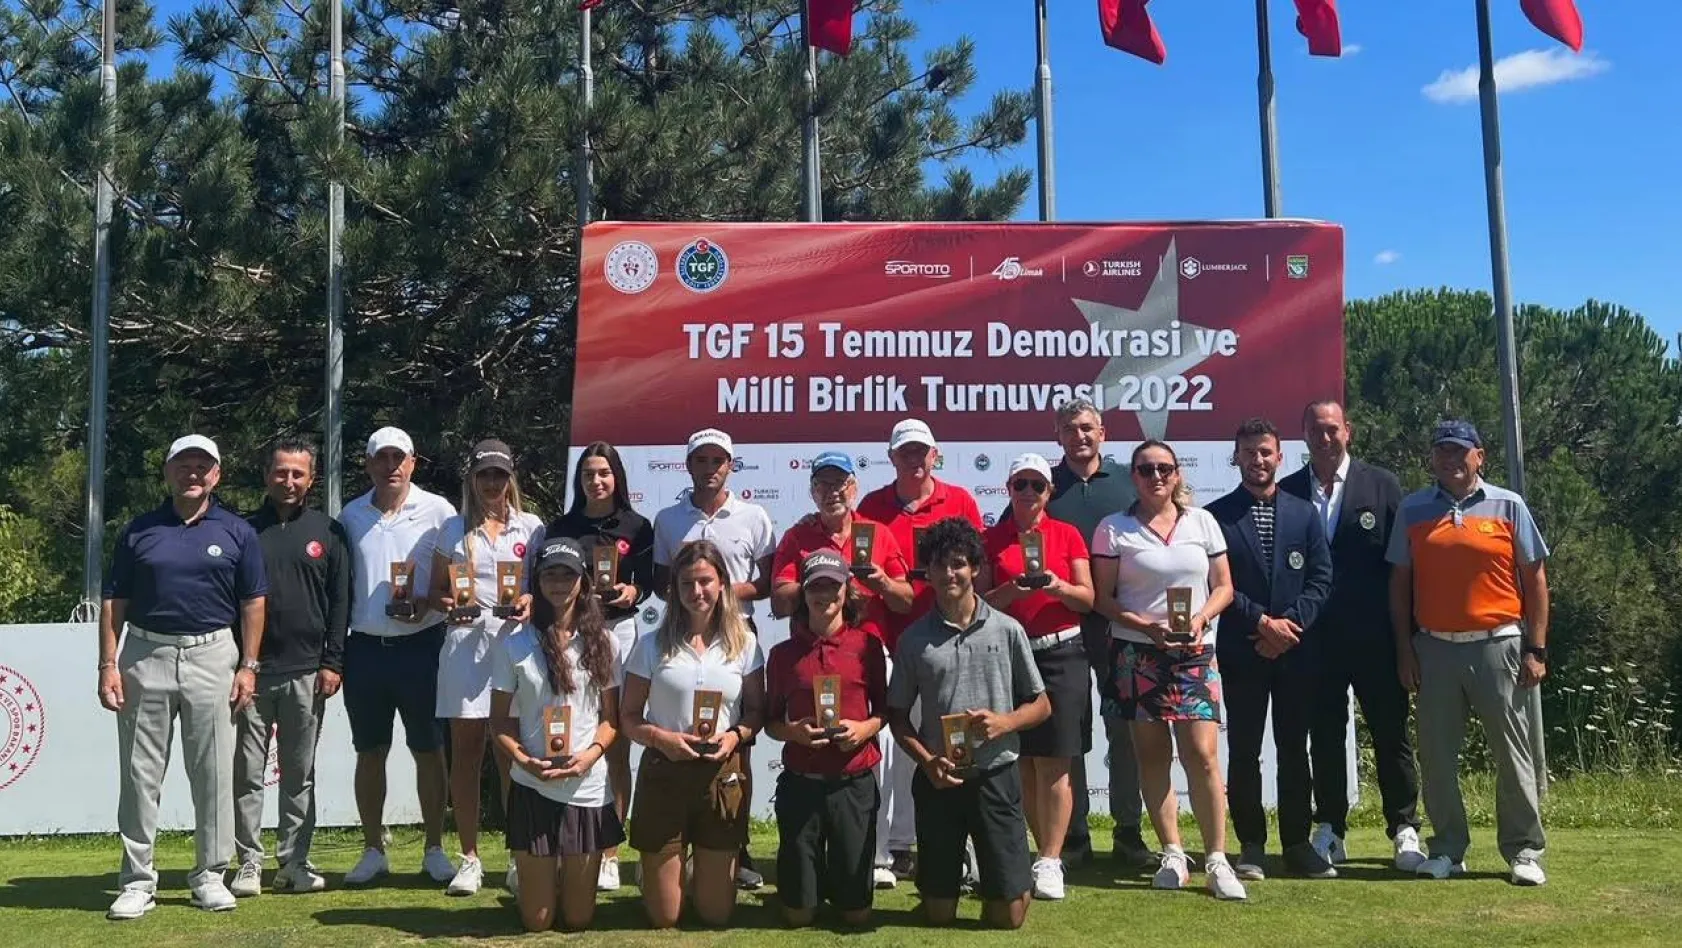 TGF 15 Temmuz Demokrasi ve Milli Birlik Turnuvası, Silivri'de gerçekleşecek